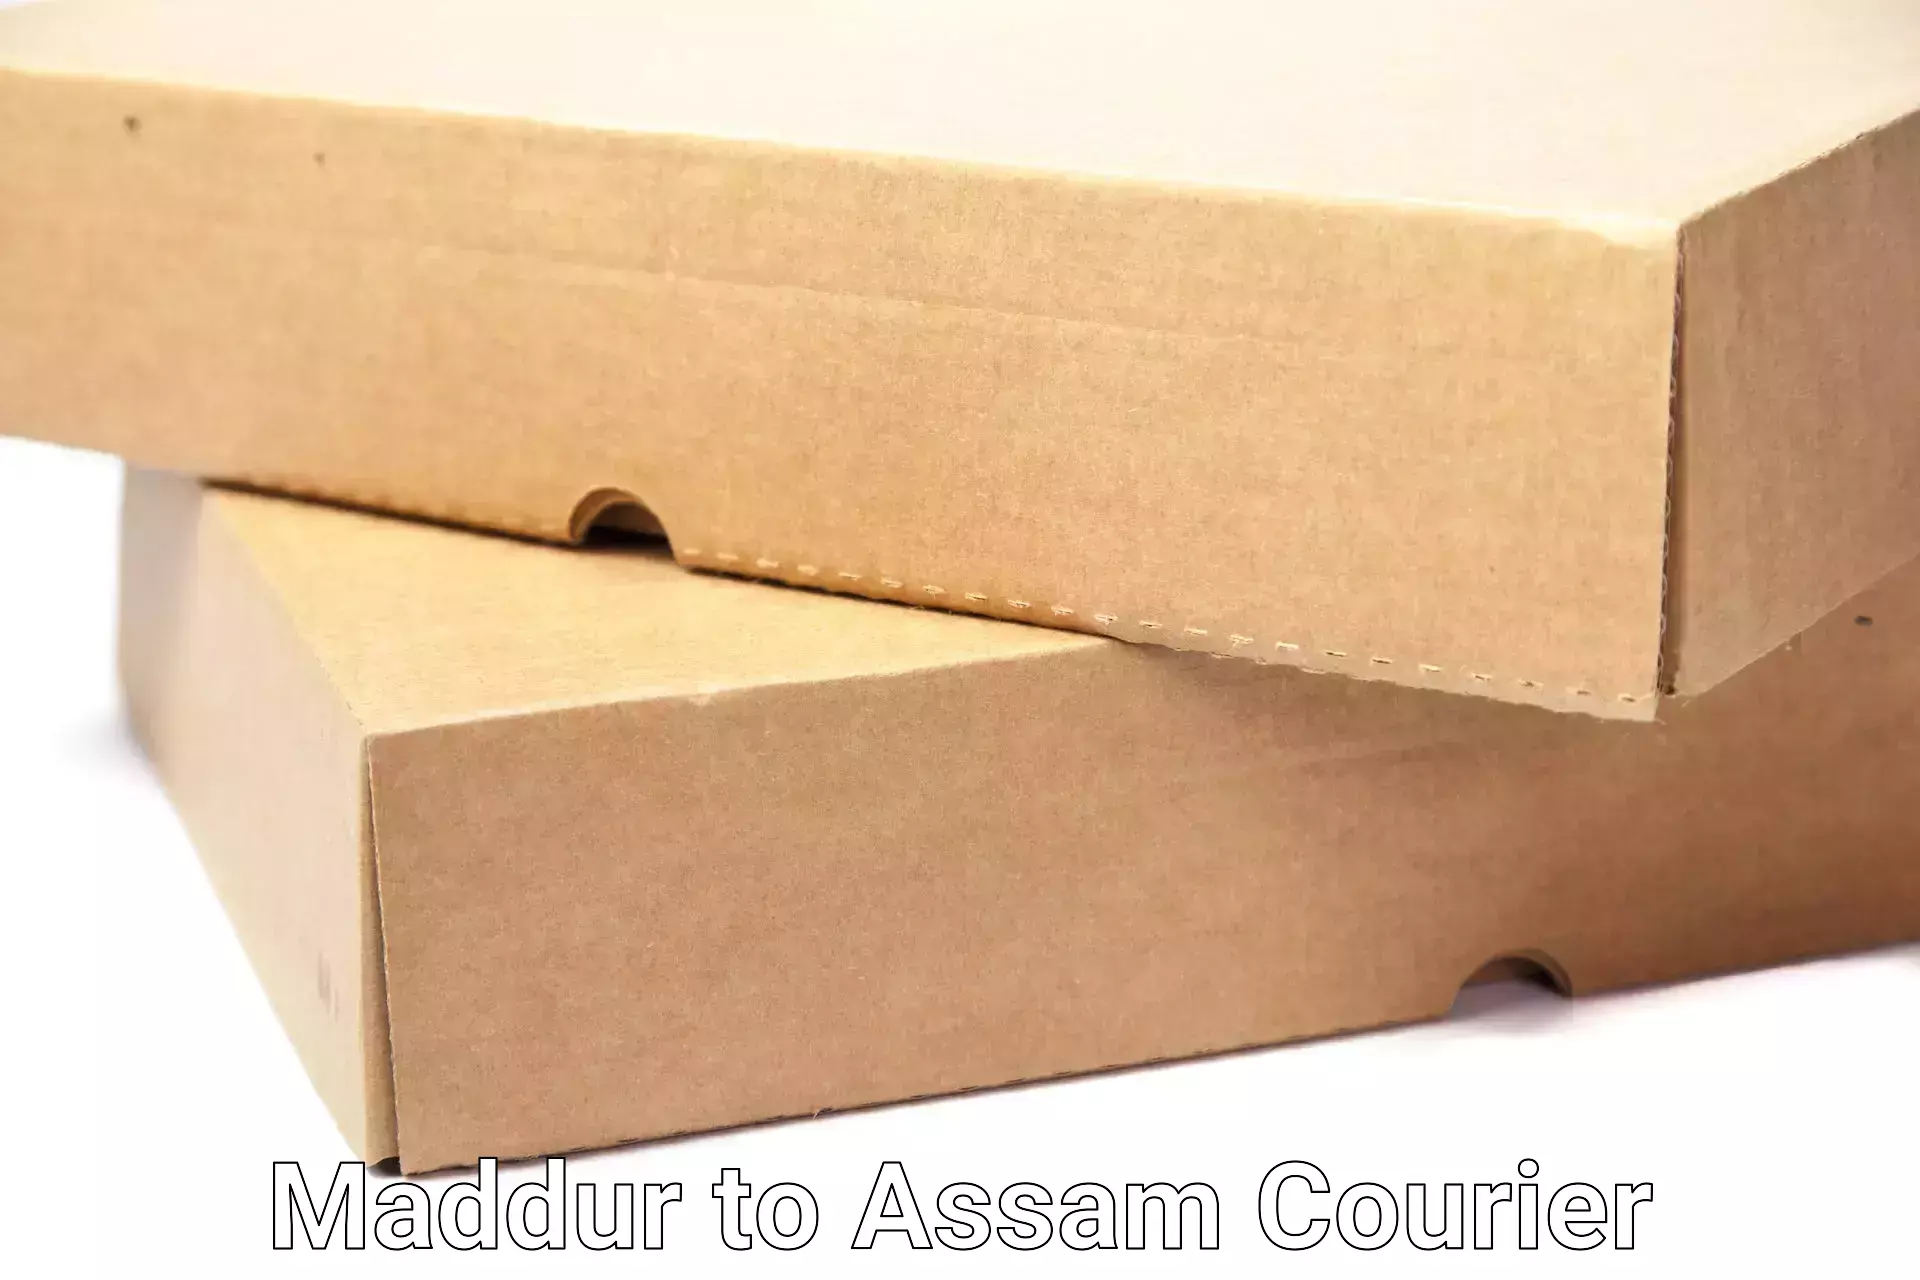 Expert goods movers Maddur to Assam